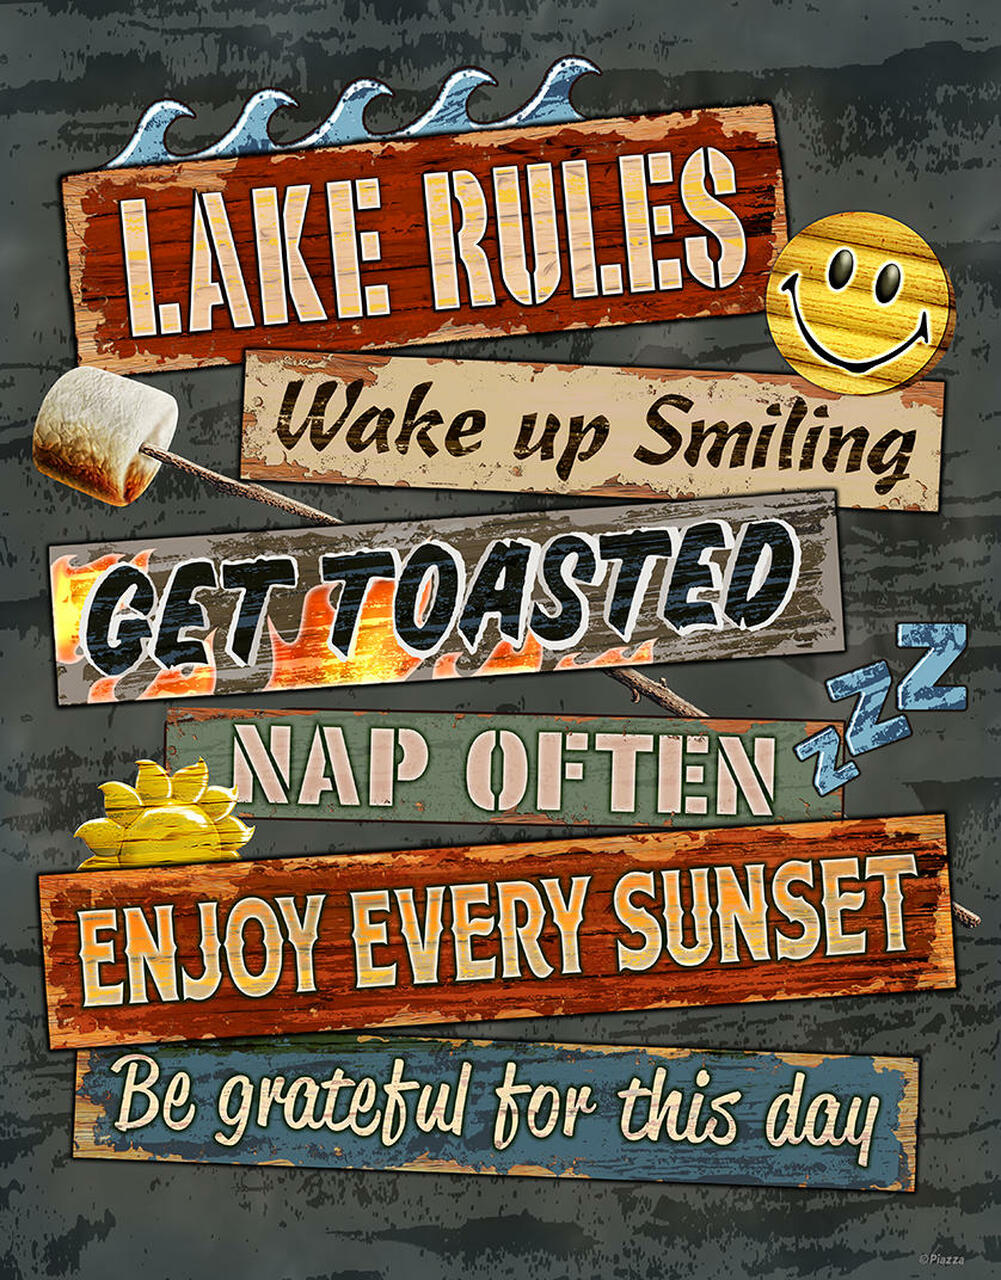 Lake Rules